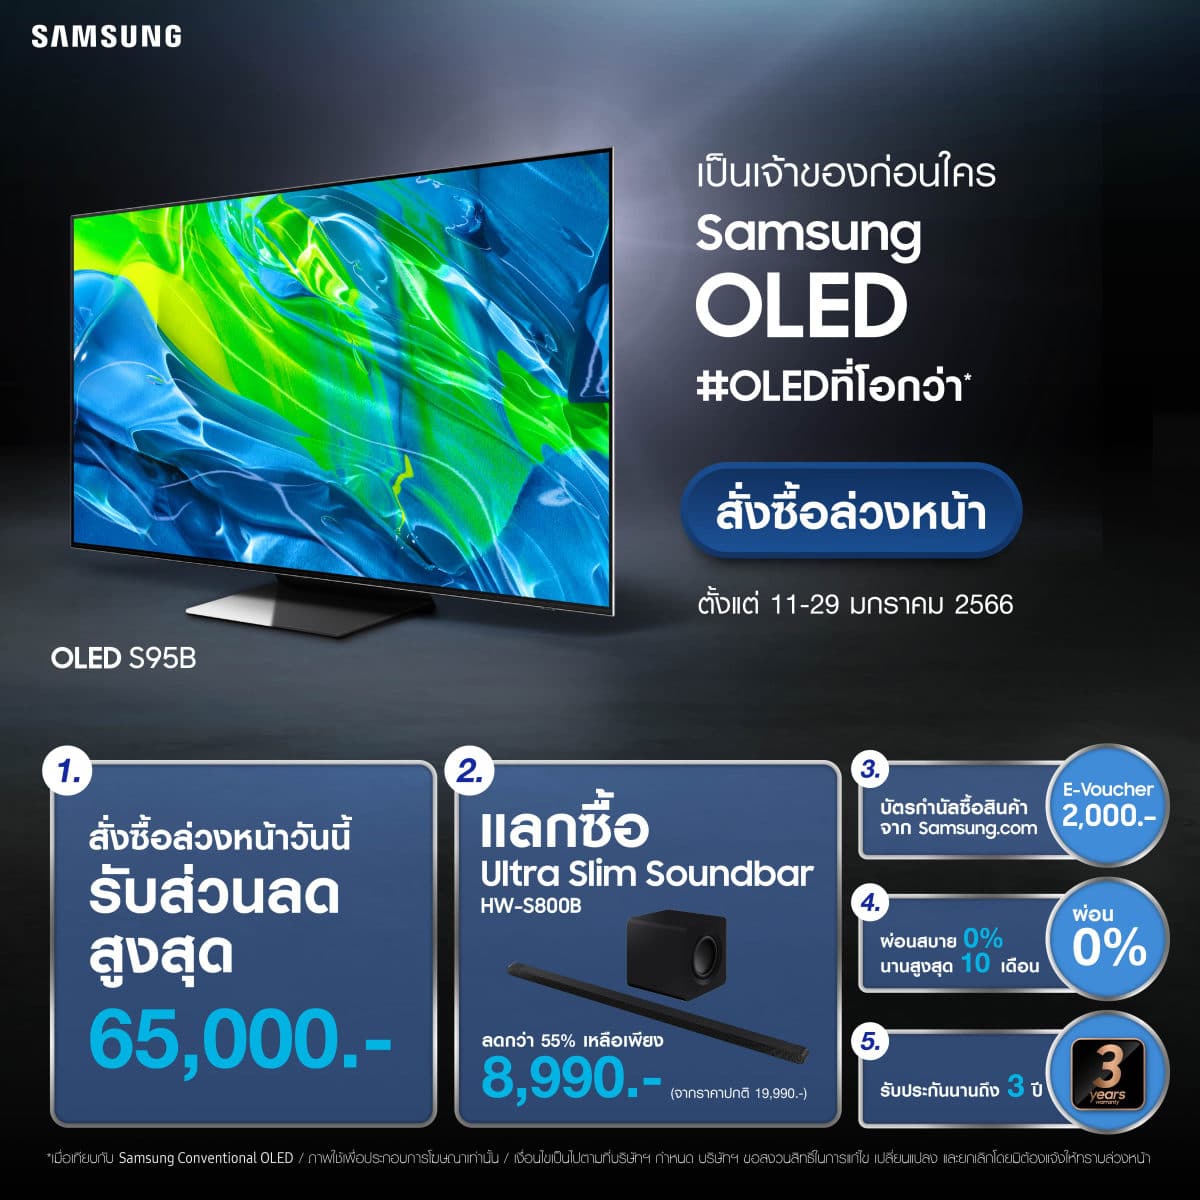 Samsung OLED ทีวีพรีเมียม